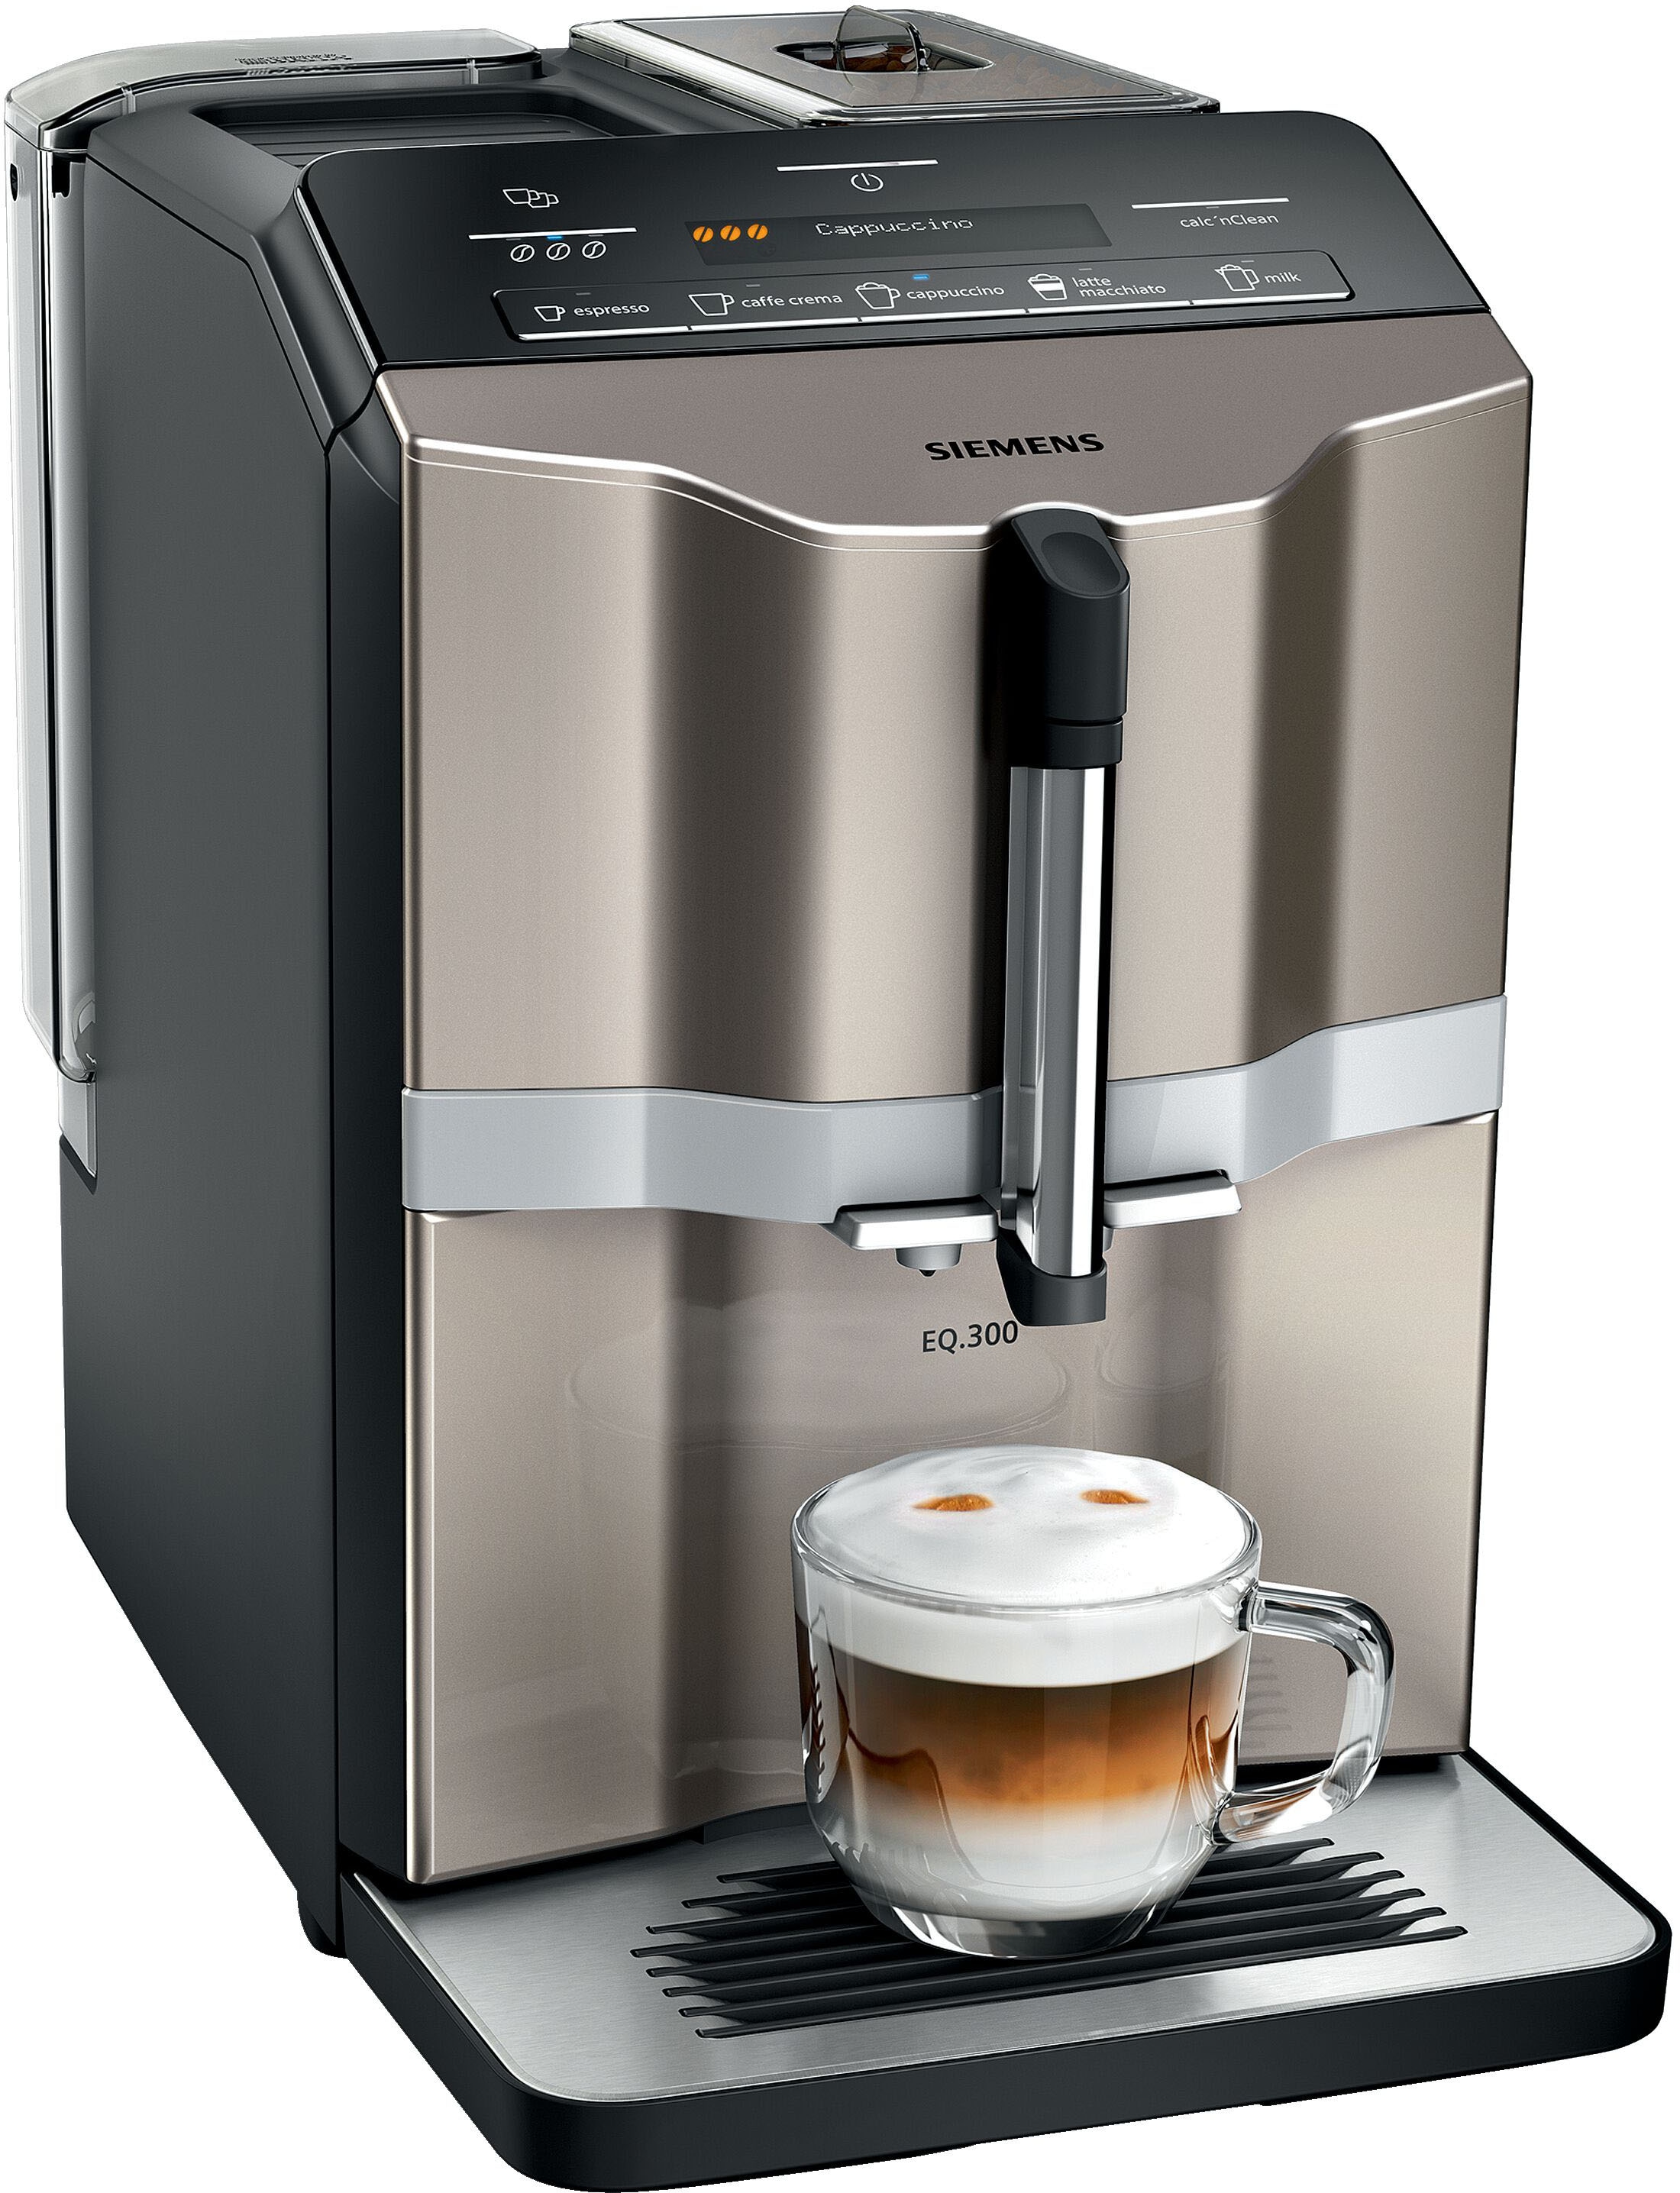 SIEMENS Kaffeevollautomat 5 OTTO Kaffee-Milch-Getränke, im »EQ.300 Zubereitung, einfache LCD-Dialog-Display TI353514DE«, Shop Online